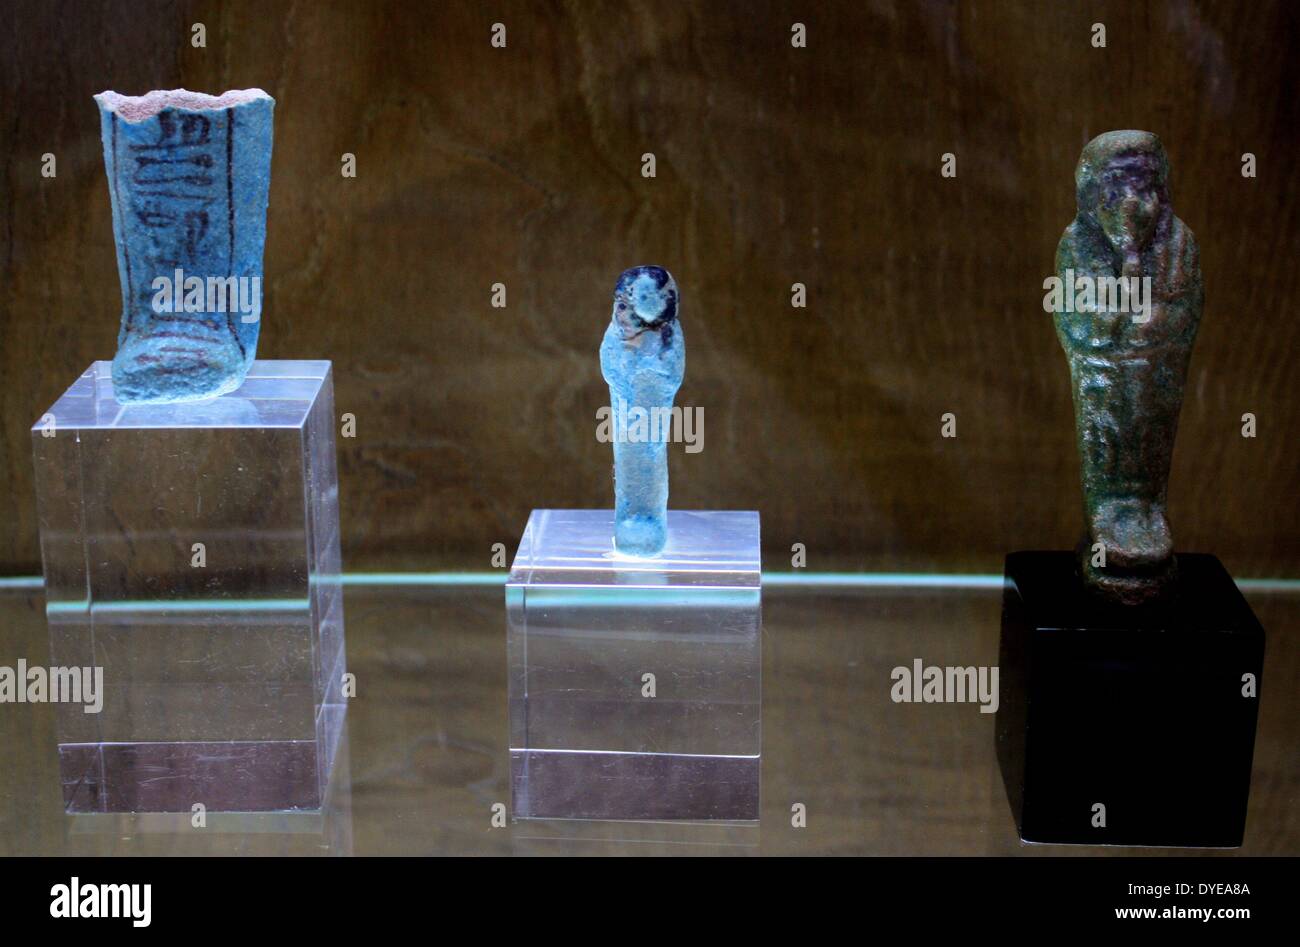 Originaire de l'Égypte des objets créés à partir de la demi- pierre précieuse Lapis lazuli. Collection de mini sarcophages. Barcelone. Espagne 2013 Banque D'Images